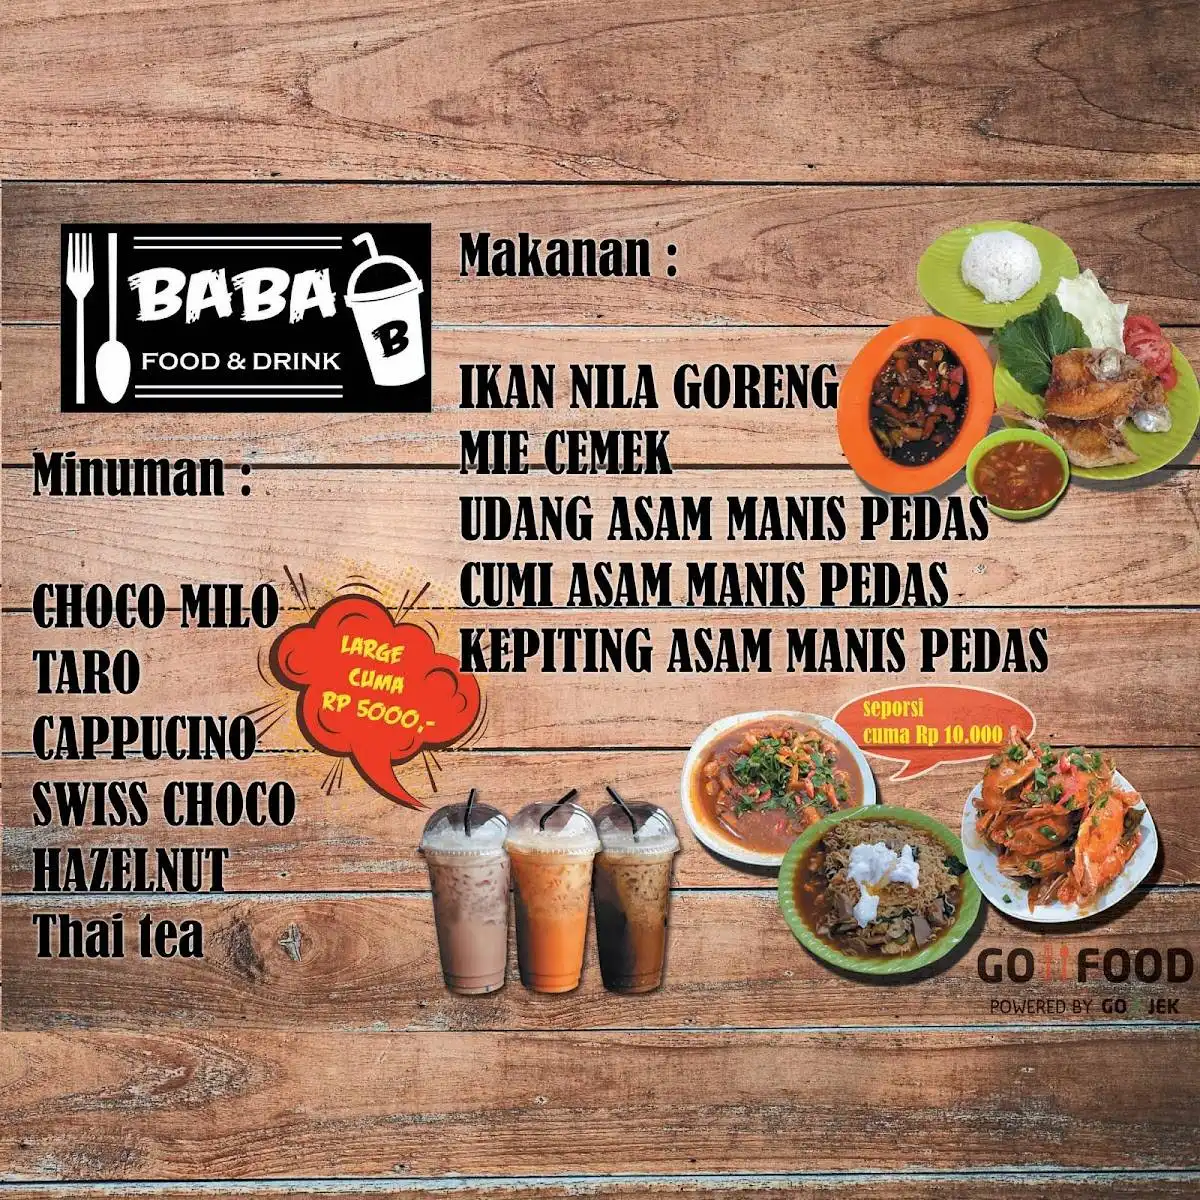 BABA Food & Drink